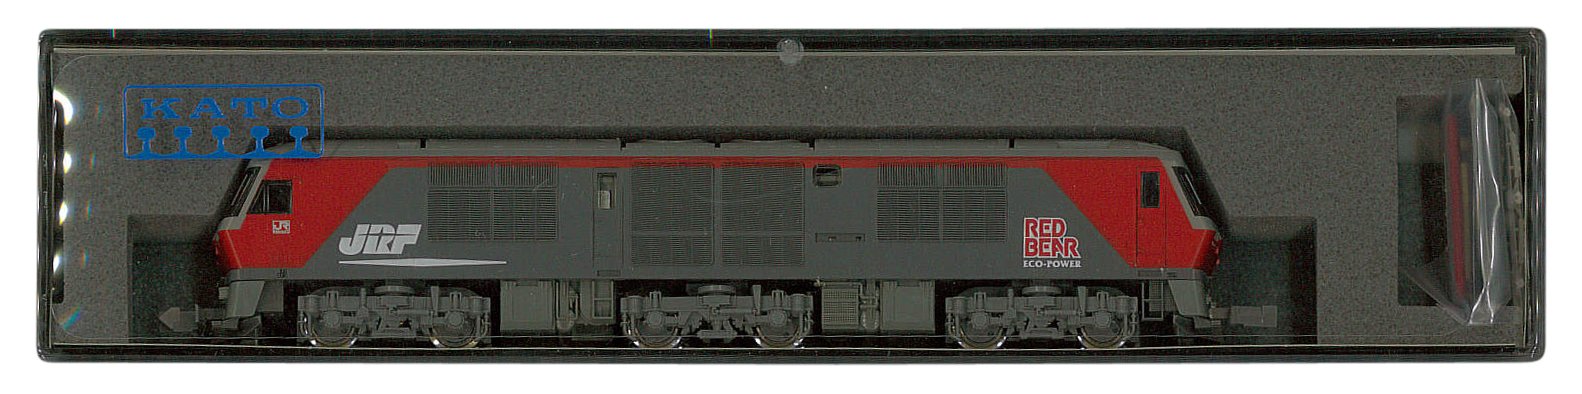 Kato N Gauge Df200 50 Model Diesel Locomotive - 7007-4 Railway Train Set